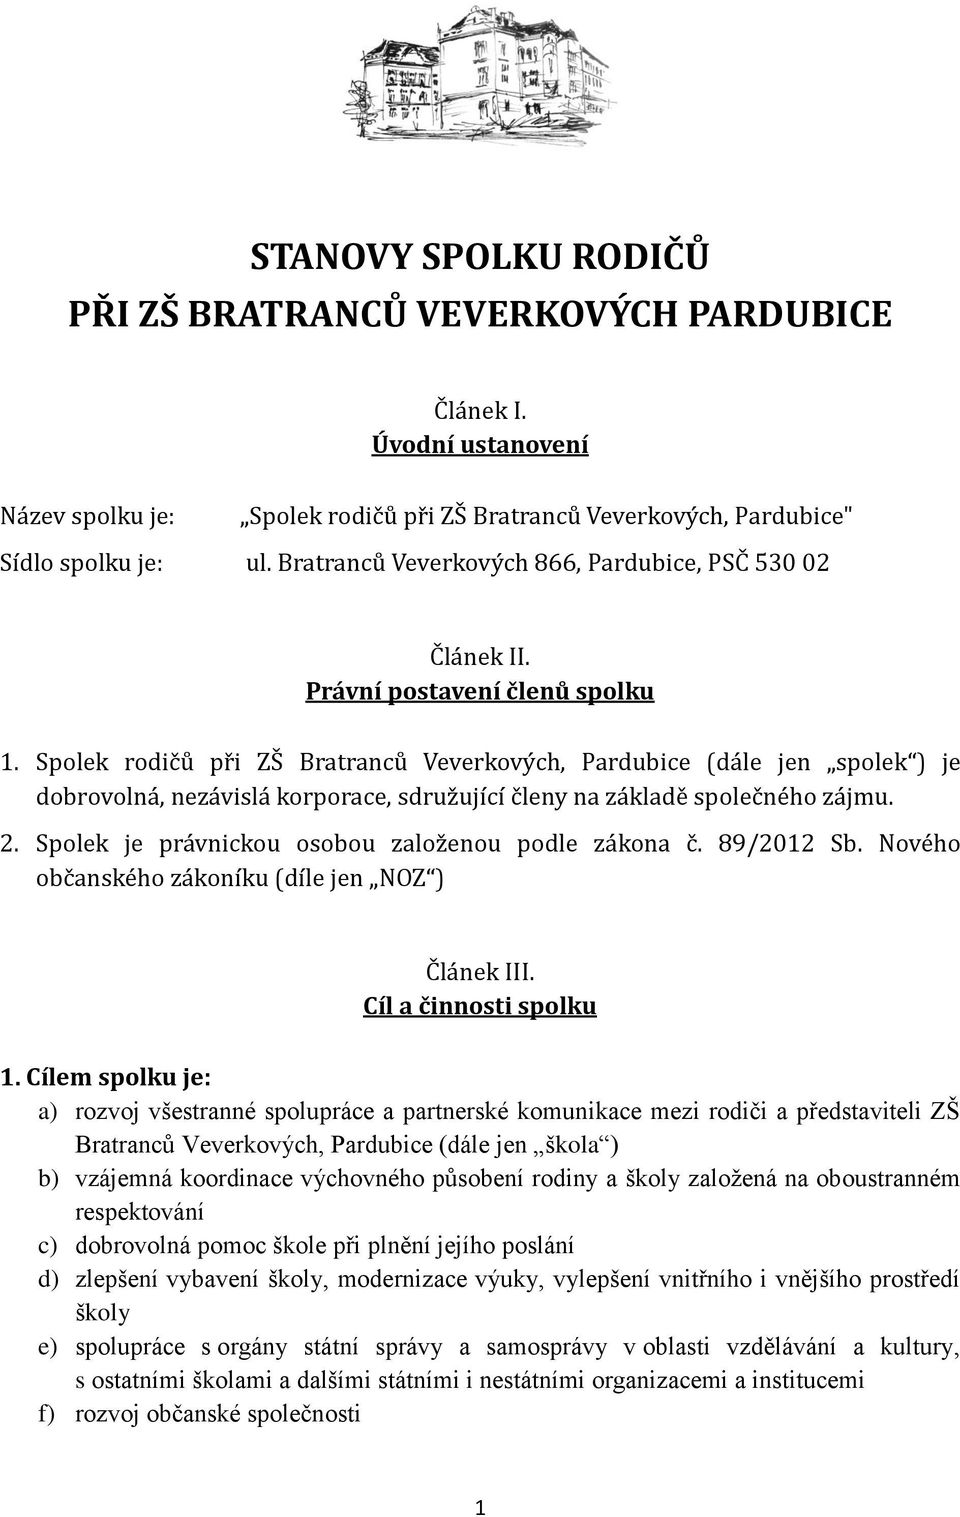 Spolek rodičů při ZŠ Bratranců Veverkových, Pardubice (dále jen spolek ) je dobrovolná, nezávislá korporace, sdružující členy na základě společného zájmu. 2.